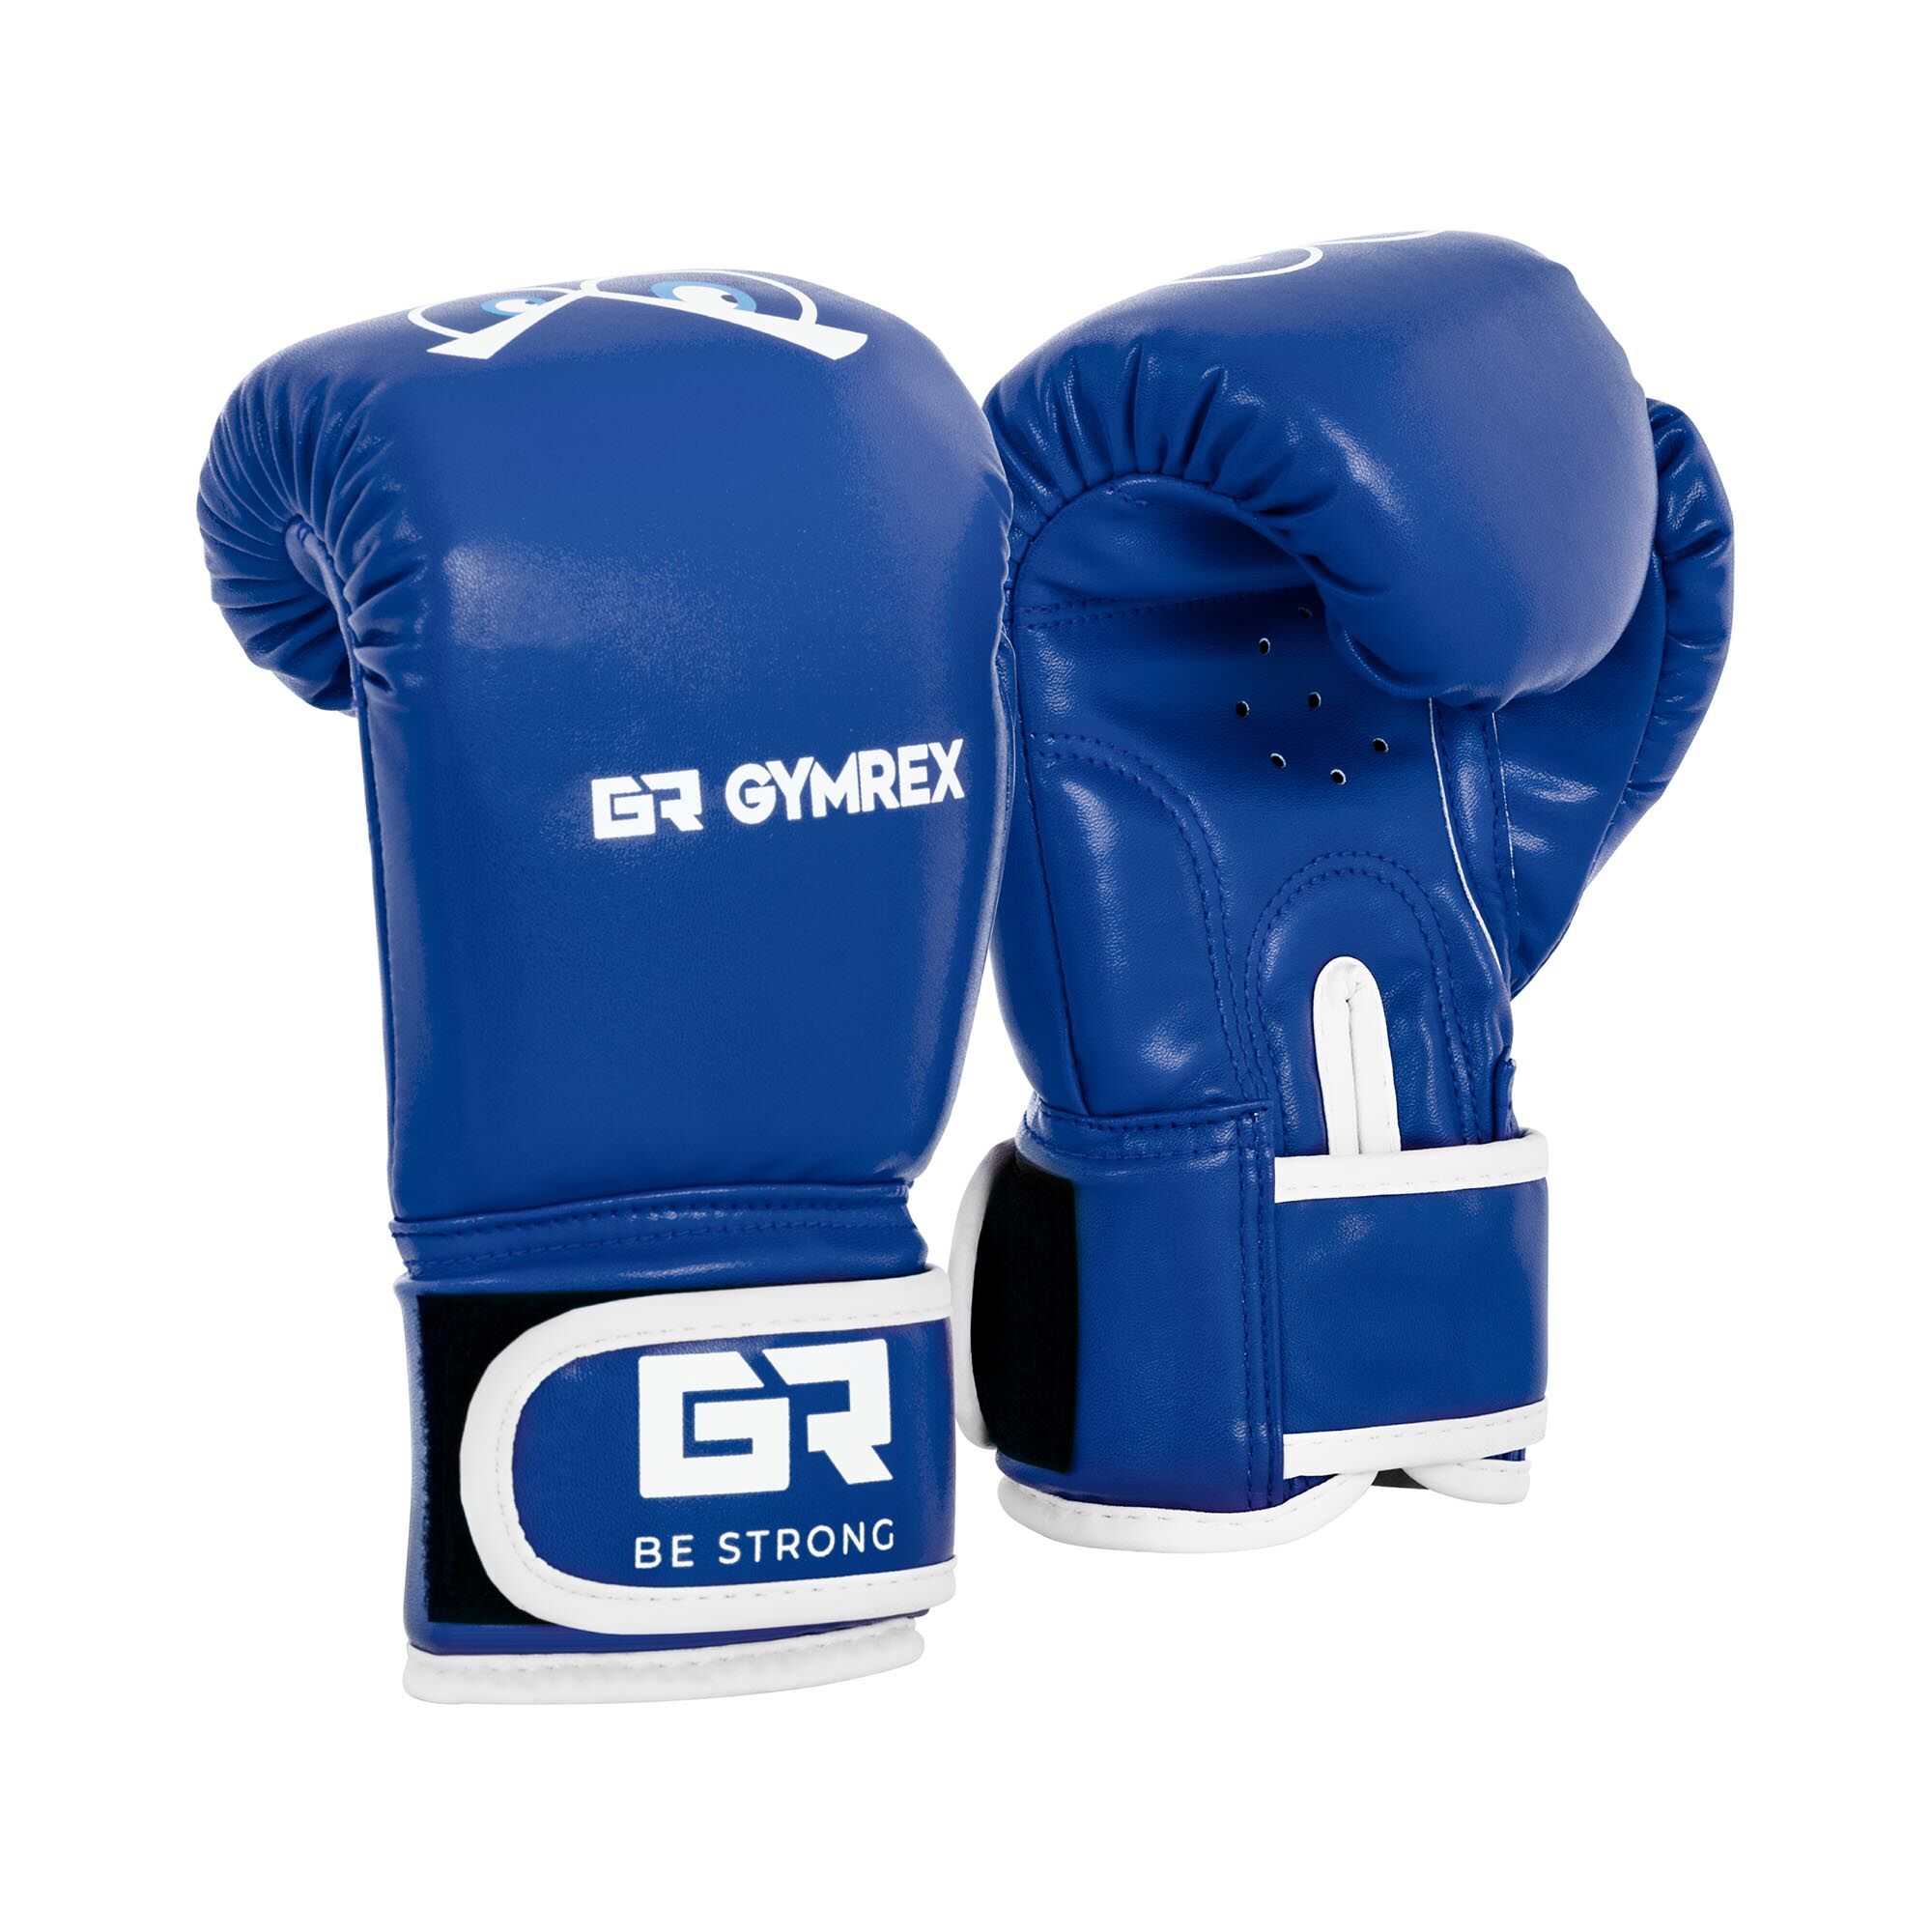 Gymrex Guantoni da boxe bambino - 4 oz - blu GR-BG 4P